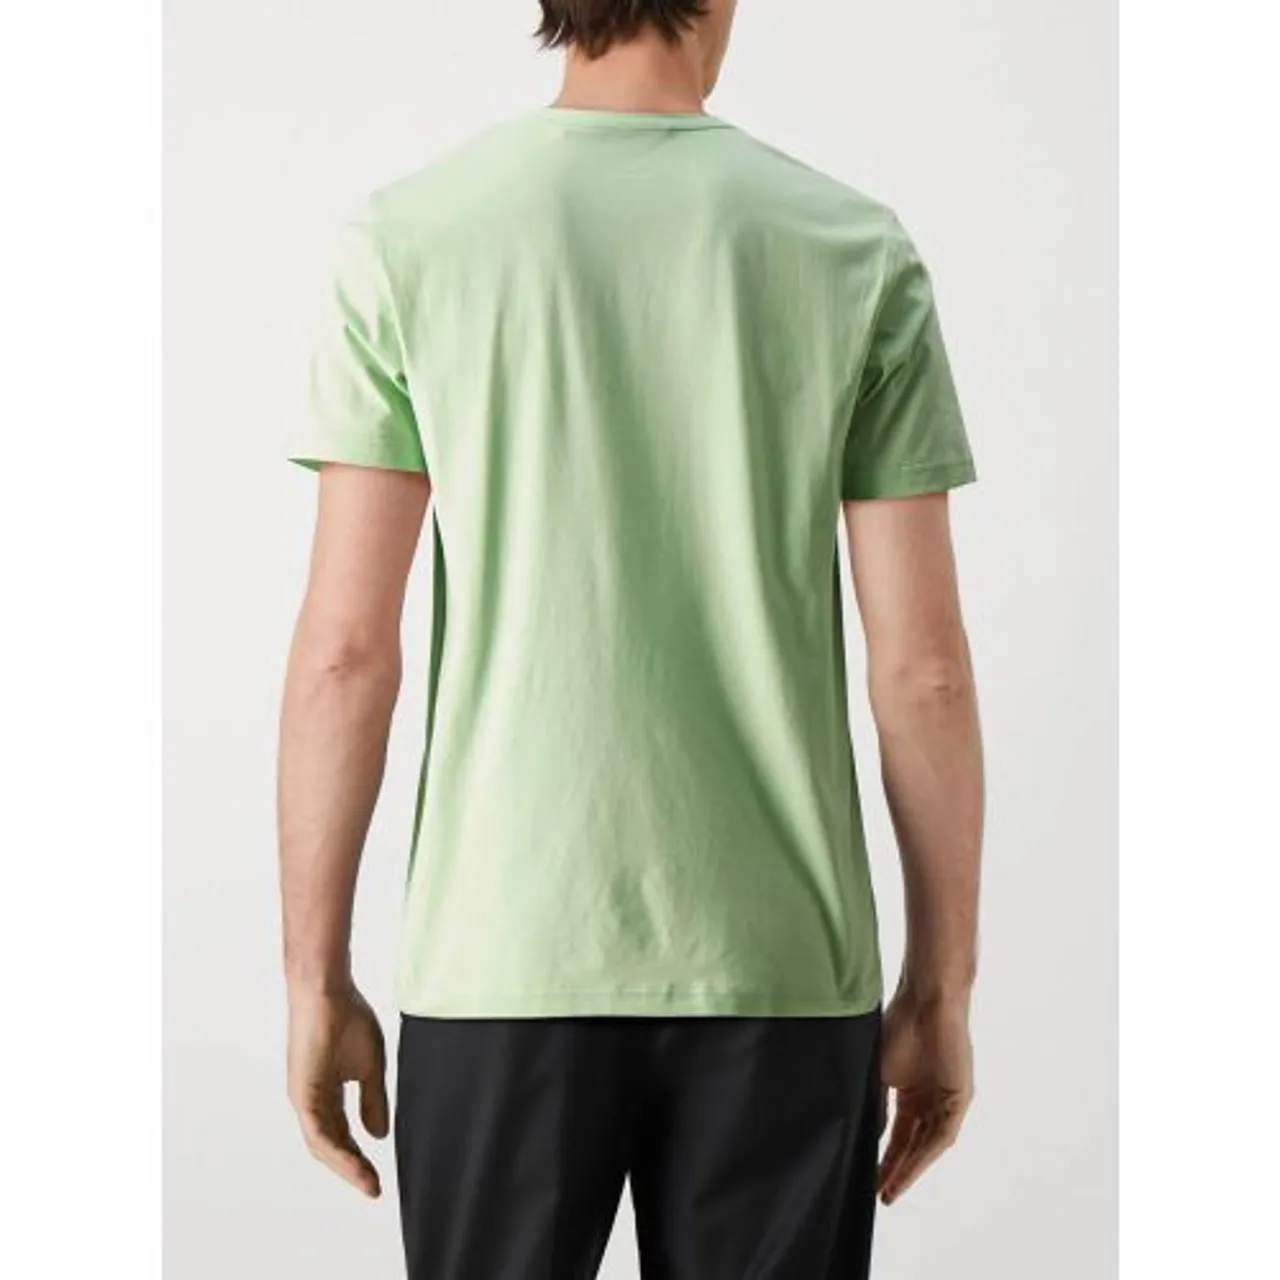 Belstaff Mens New Leaf Green Cotton Jersey T-Shirt